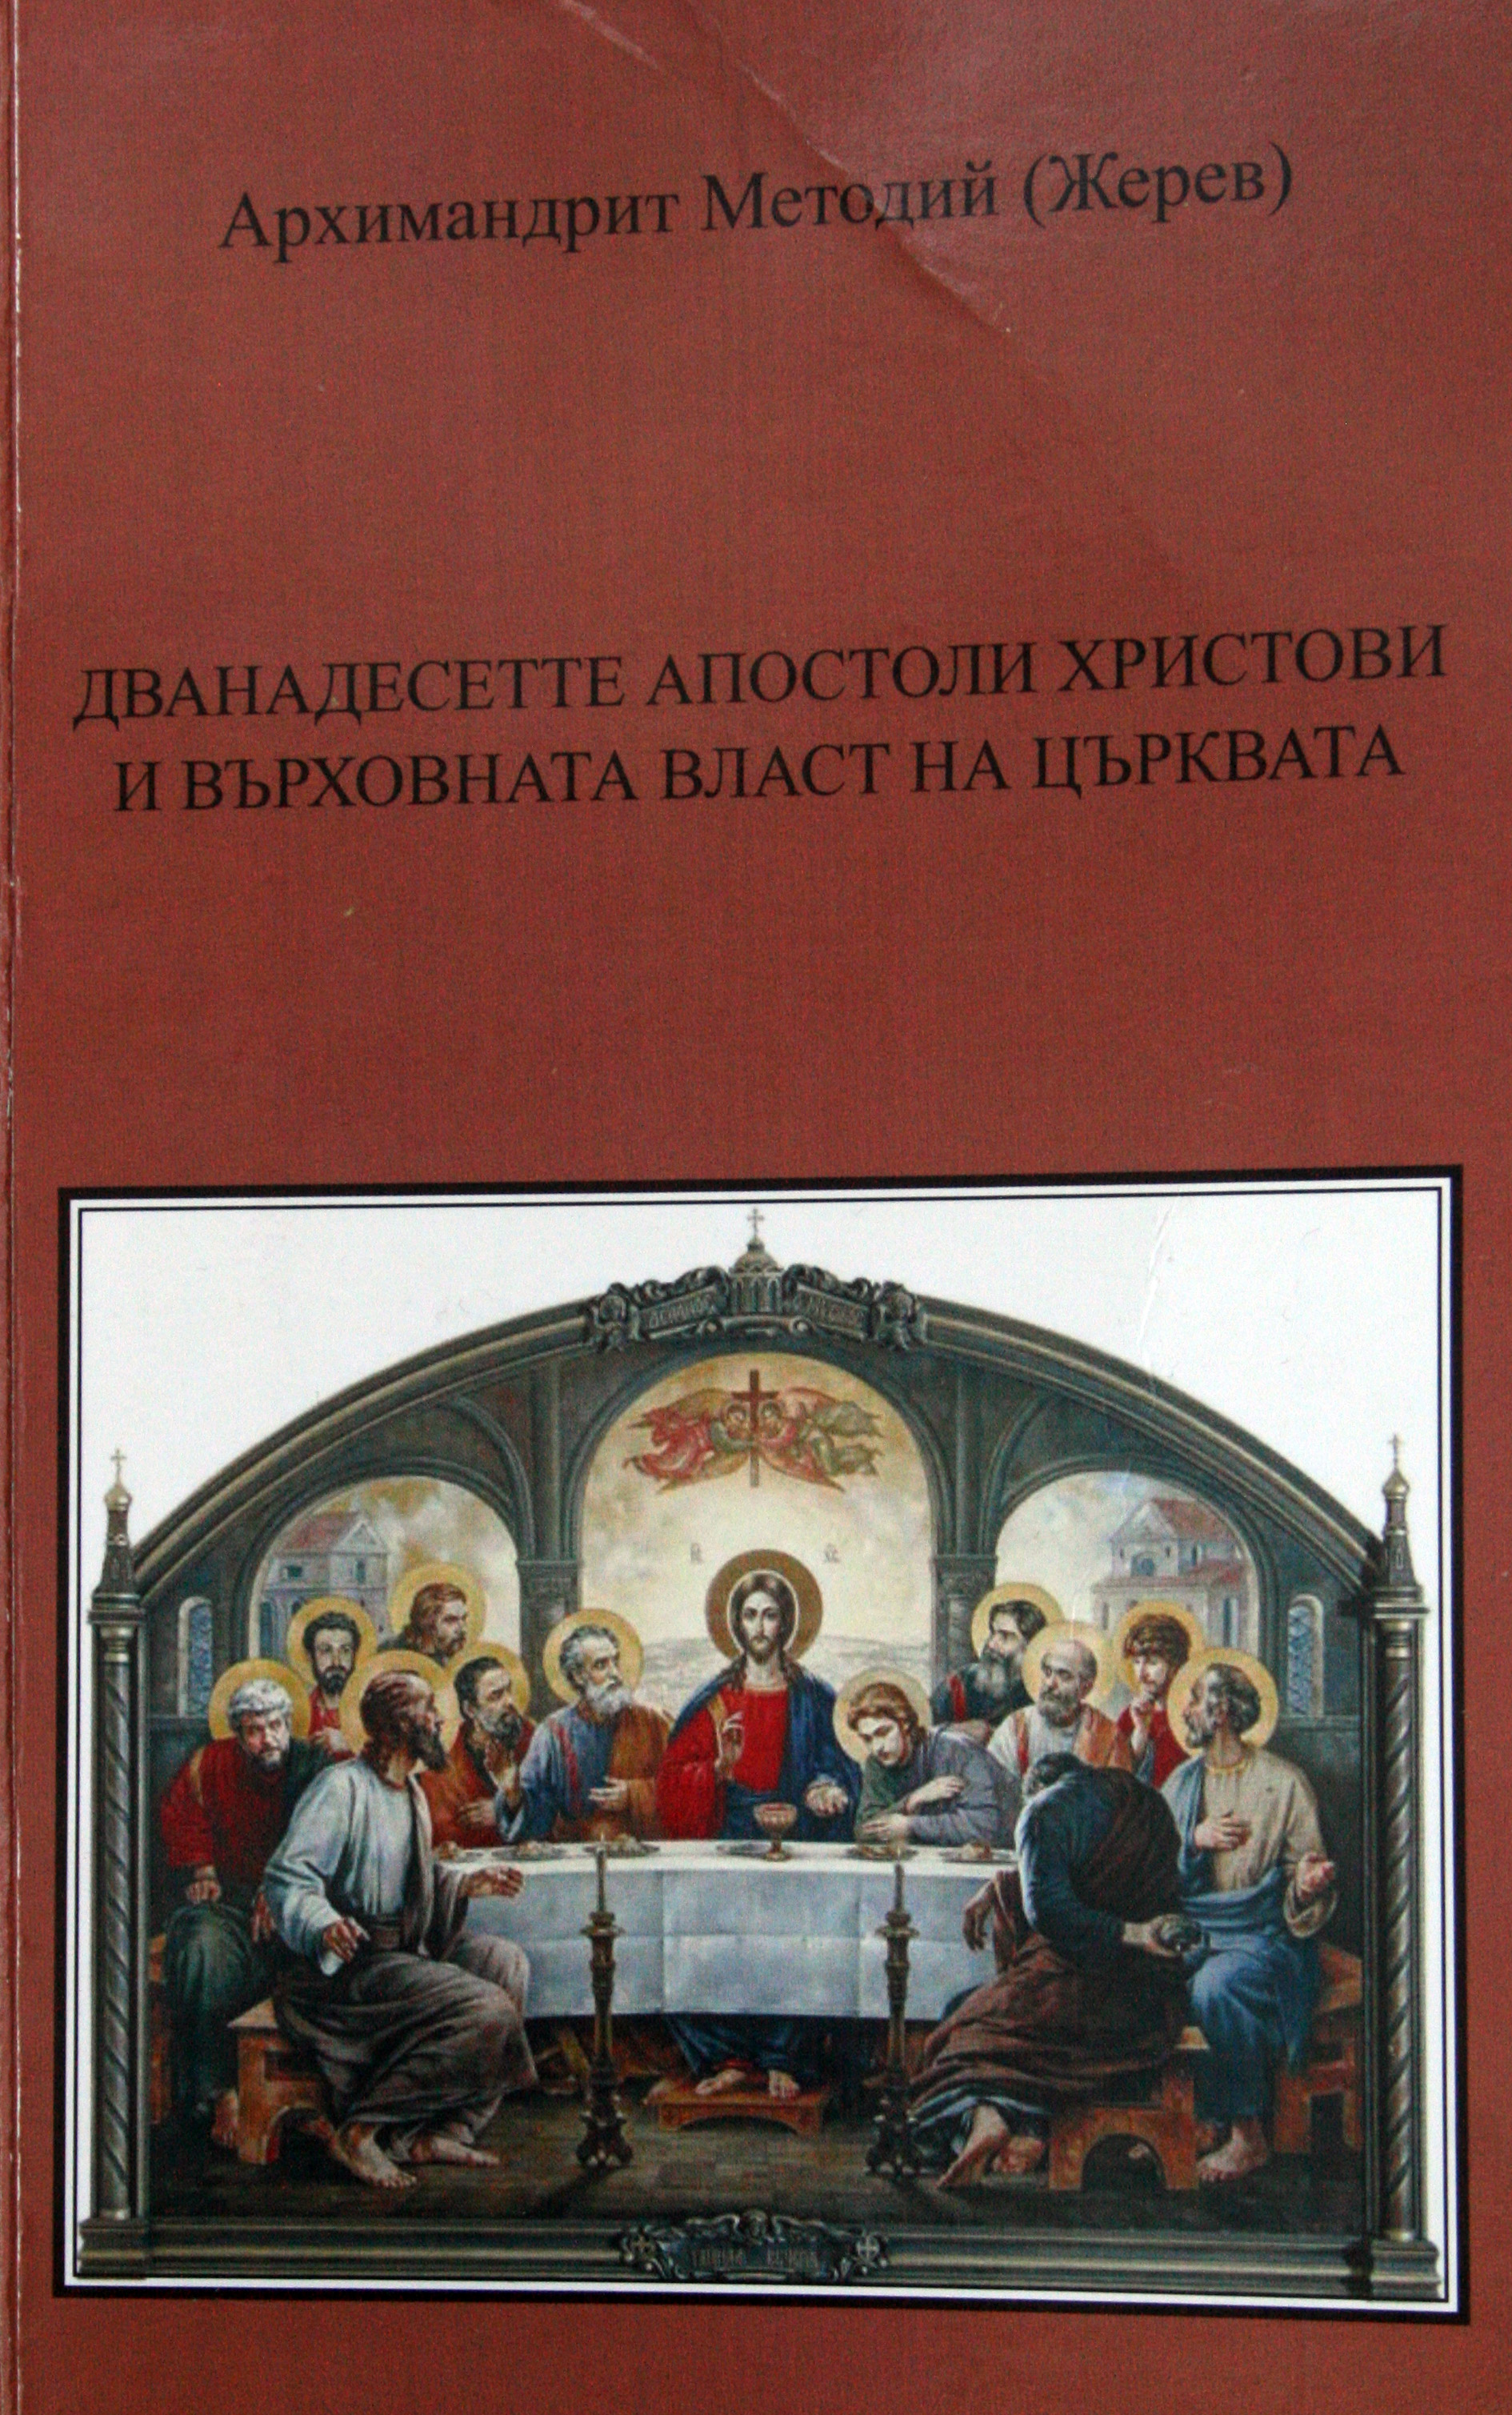  Книгата на дядо Методий, в която изяснява ролята на 12-те апостоли.